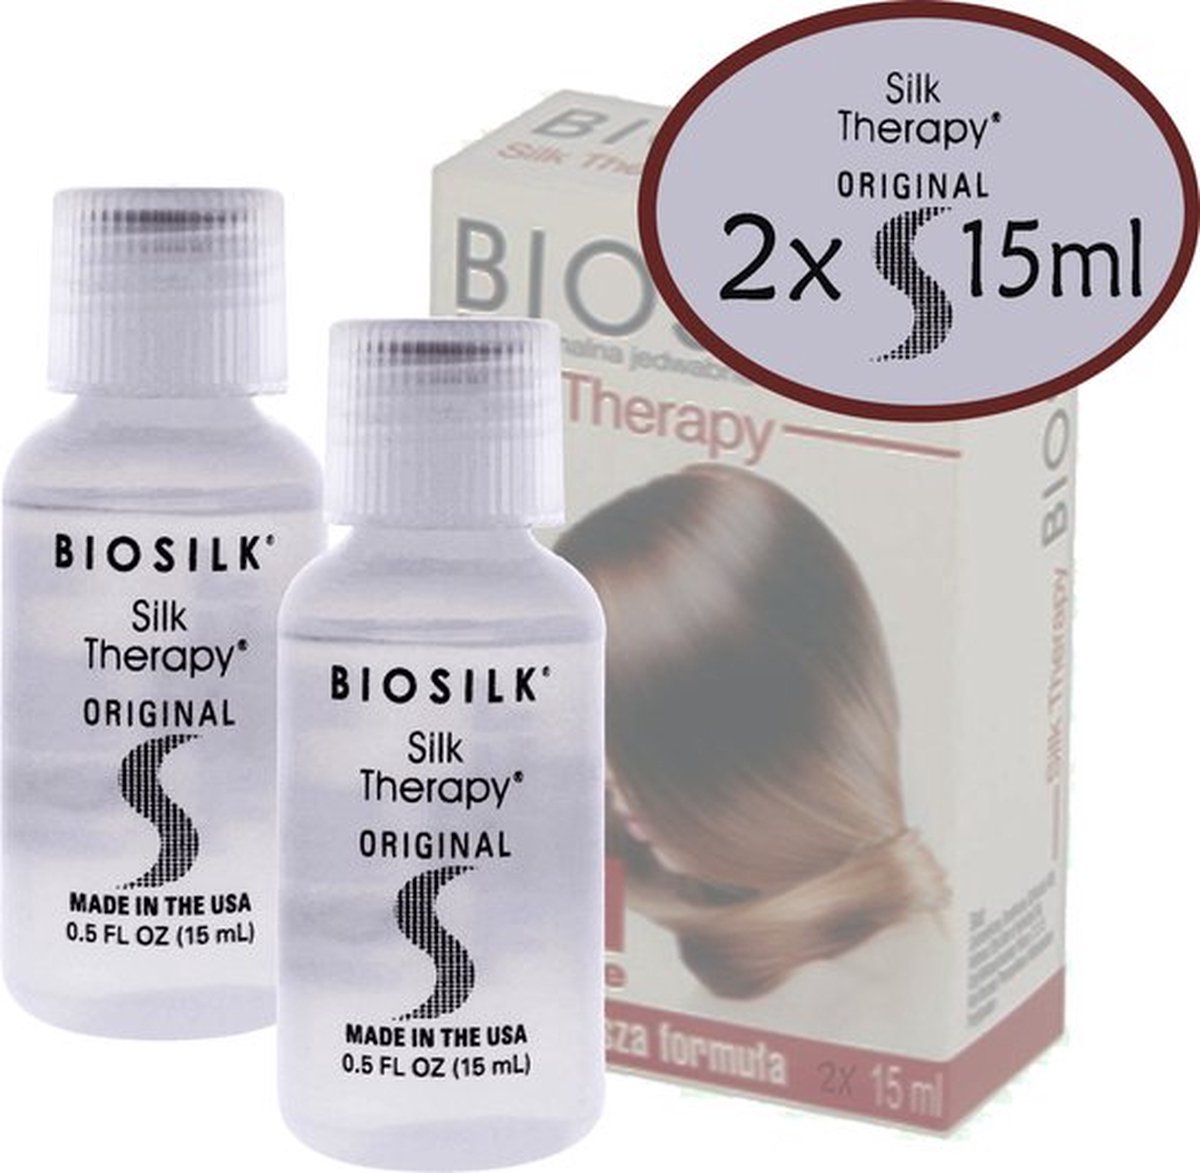 Biosilk Silk Therapy Silk -2x 15ml